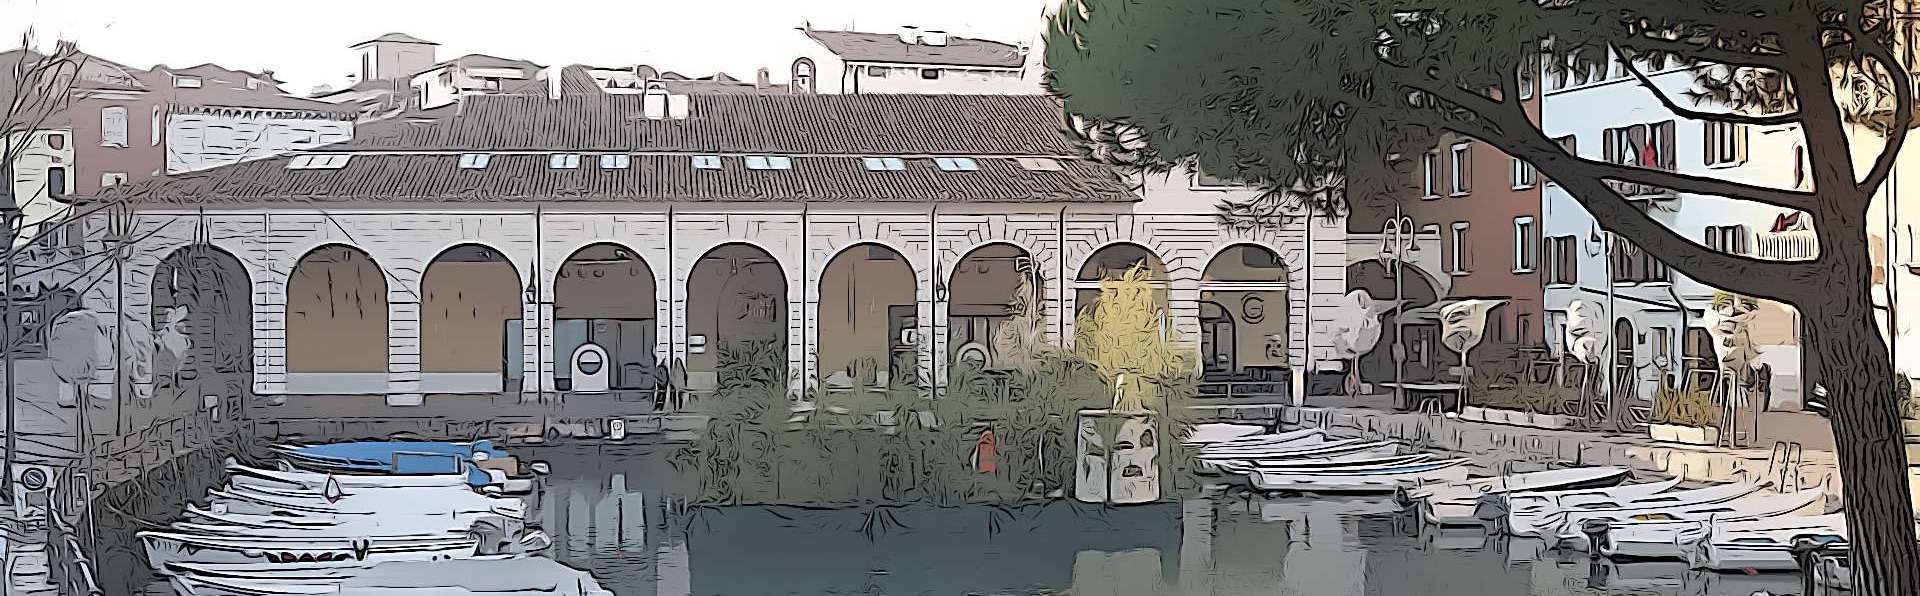 Desenzano del Garda | Palazzo Todeschini und Villa Brunati